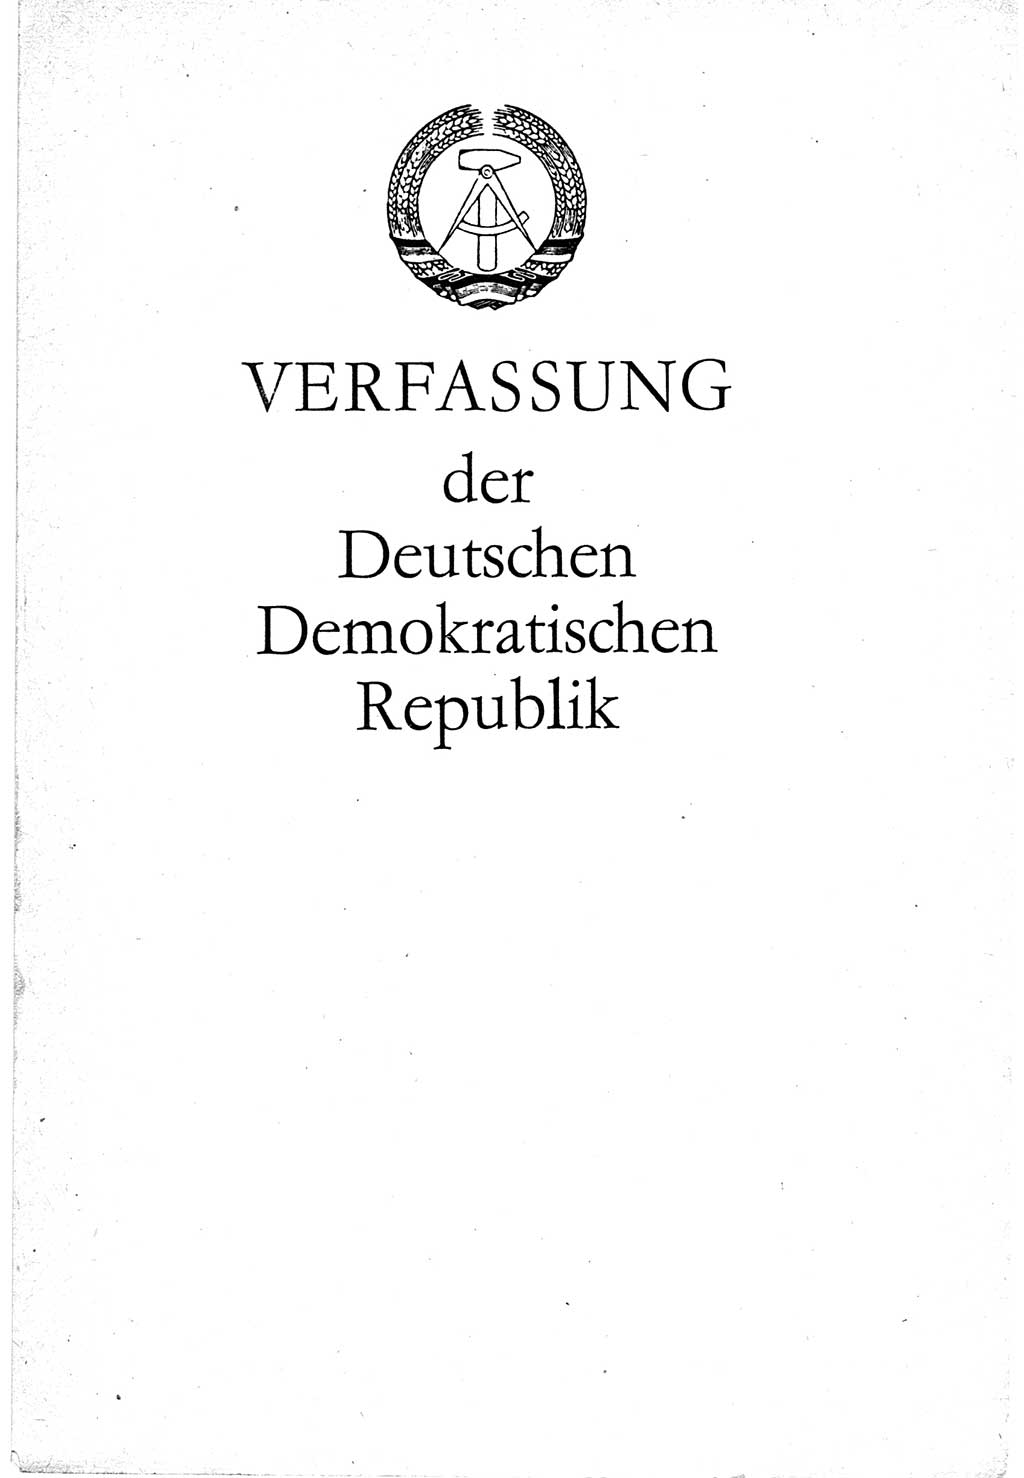 Verfassung der Deutschen Demokratischen Republik (DDR) vom 7. Oktober 1974, Seite 3 (Verf. DDR 1974, S. 3)